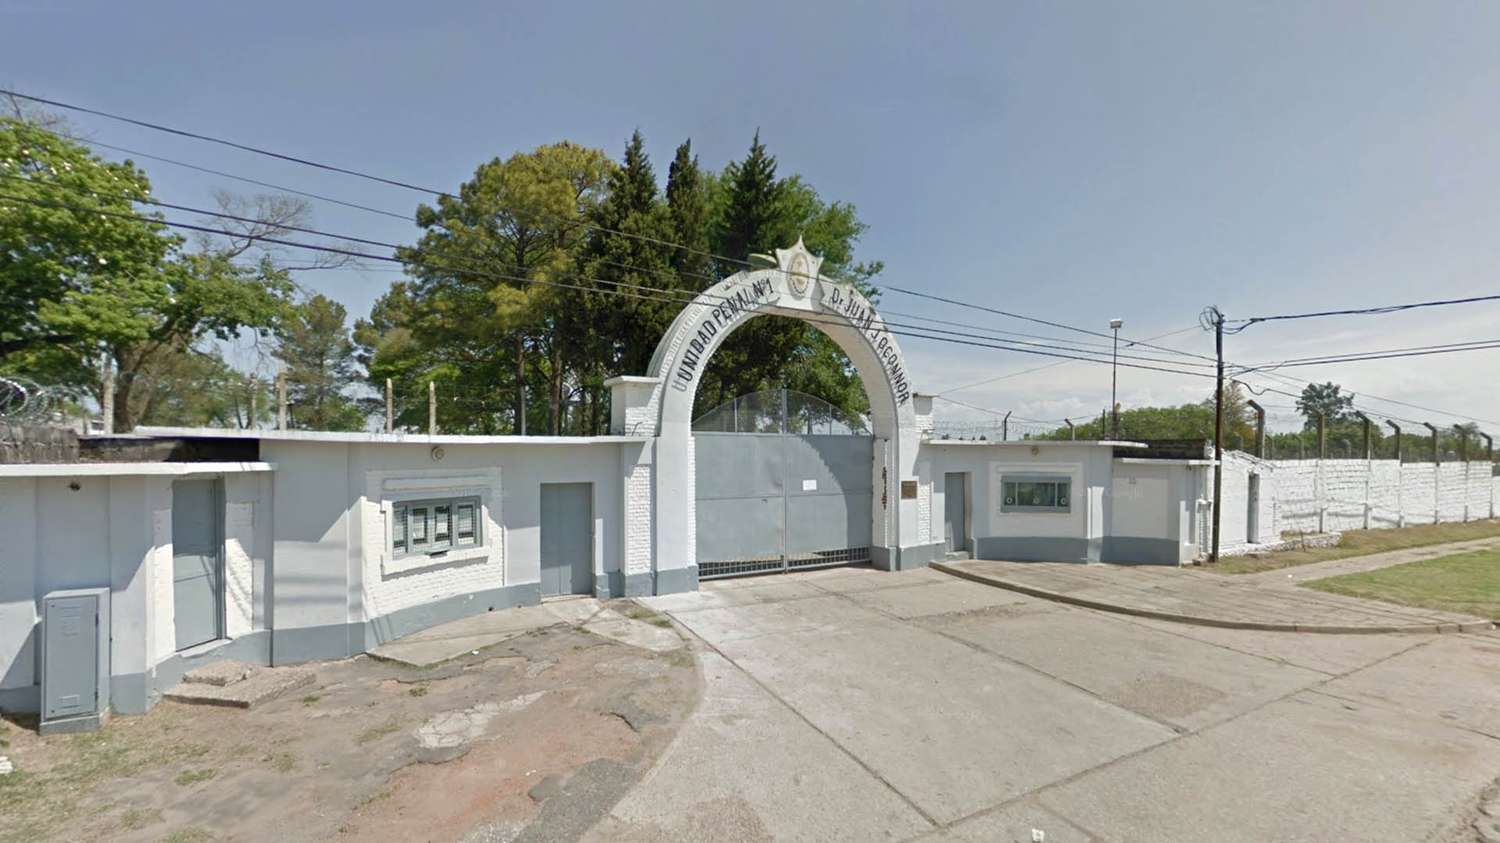 Presos fuera de las cárceles: Tres cumplen arresto domiciliario en Crespo